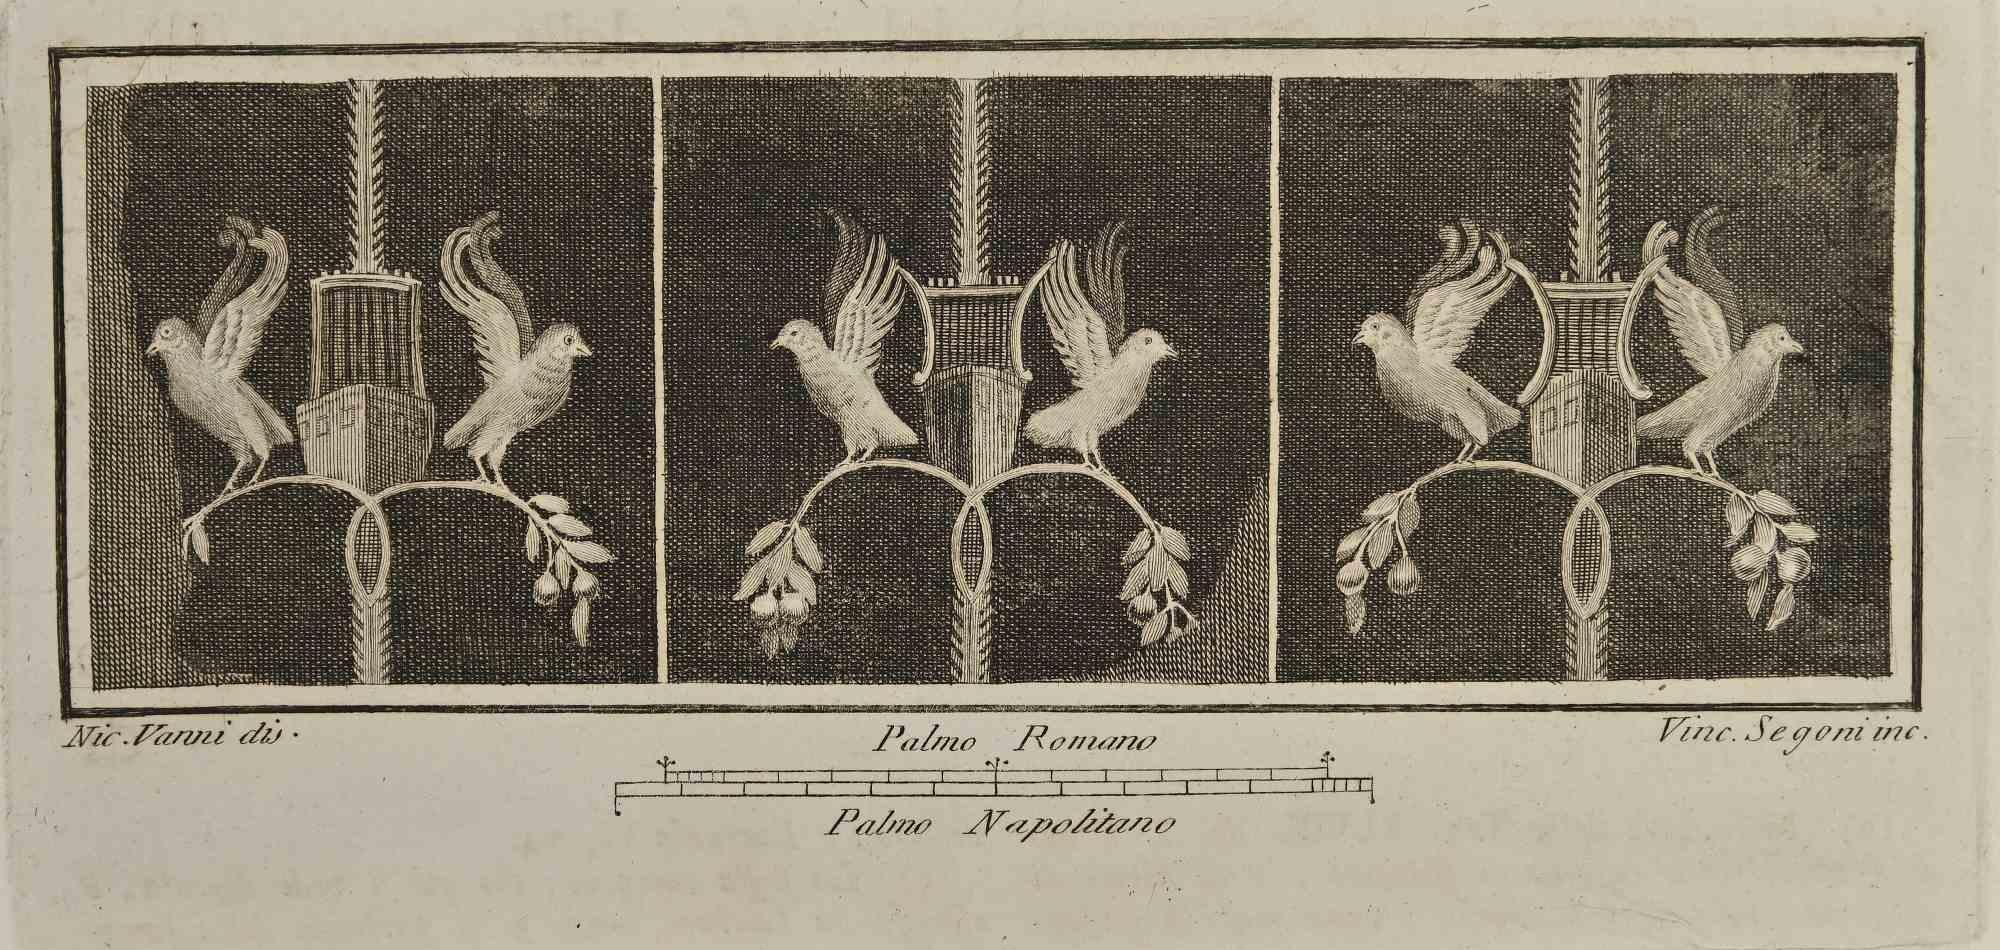 Fresque de nature morte avec oiseaux des "Antiquités d'Herculanum" est une gravure sur papier réalisée par Vincenzo Segoni au 18ème siècle.

Signé sur la plaque.

Bon état avec quelques pliures.

La gravure appartient à la suite d'estampes